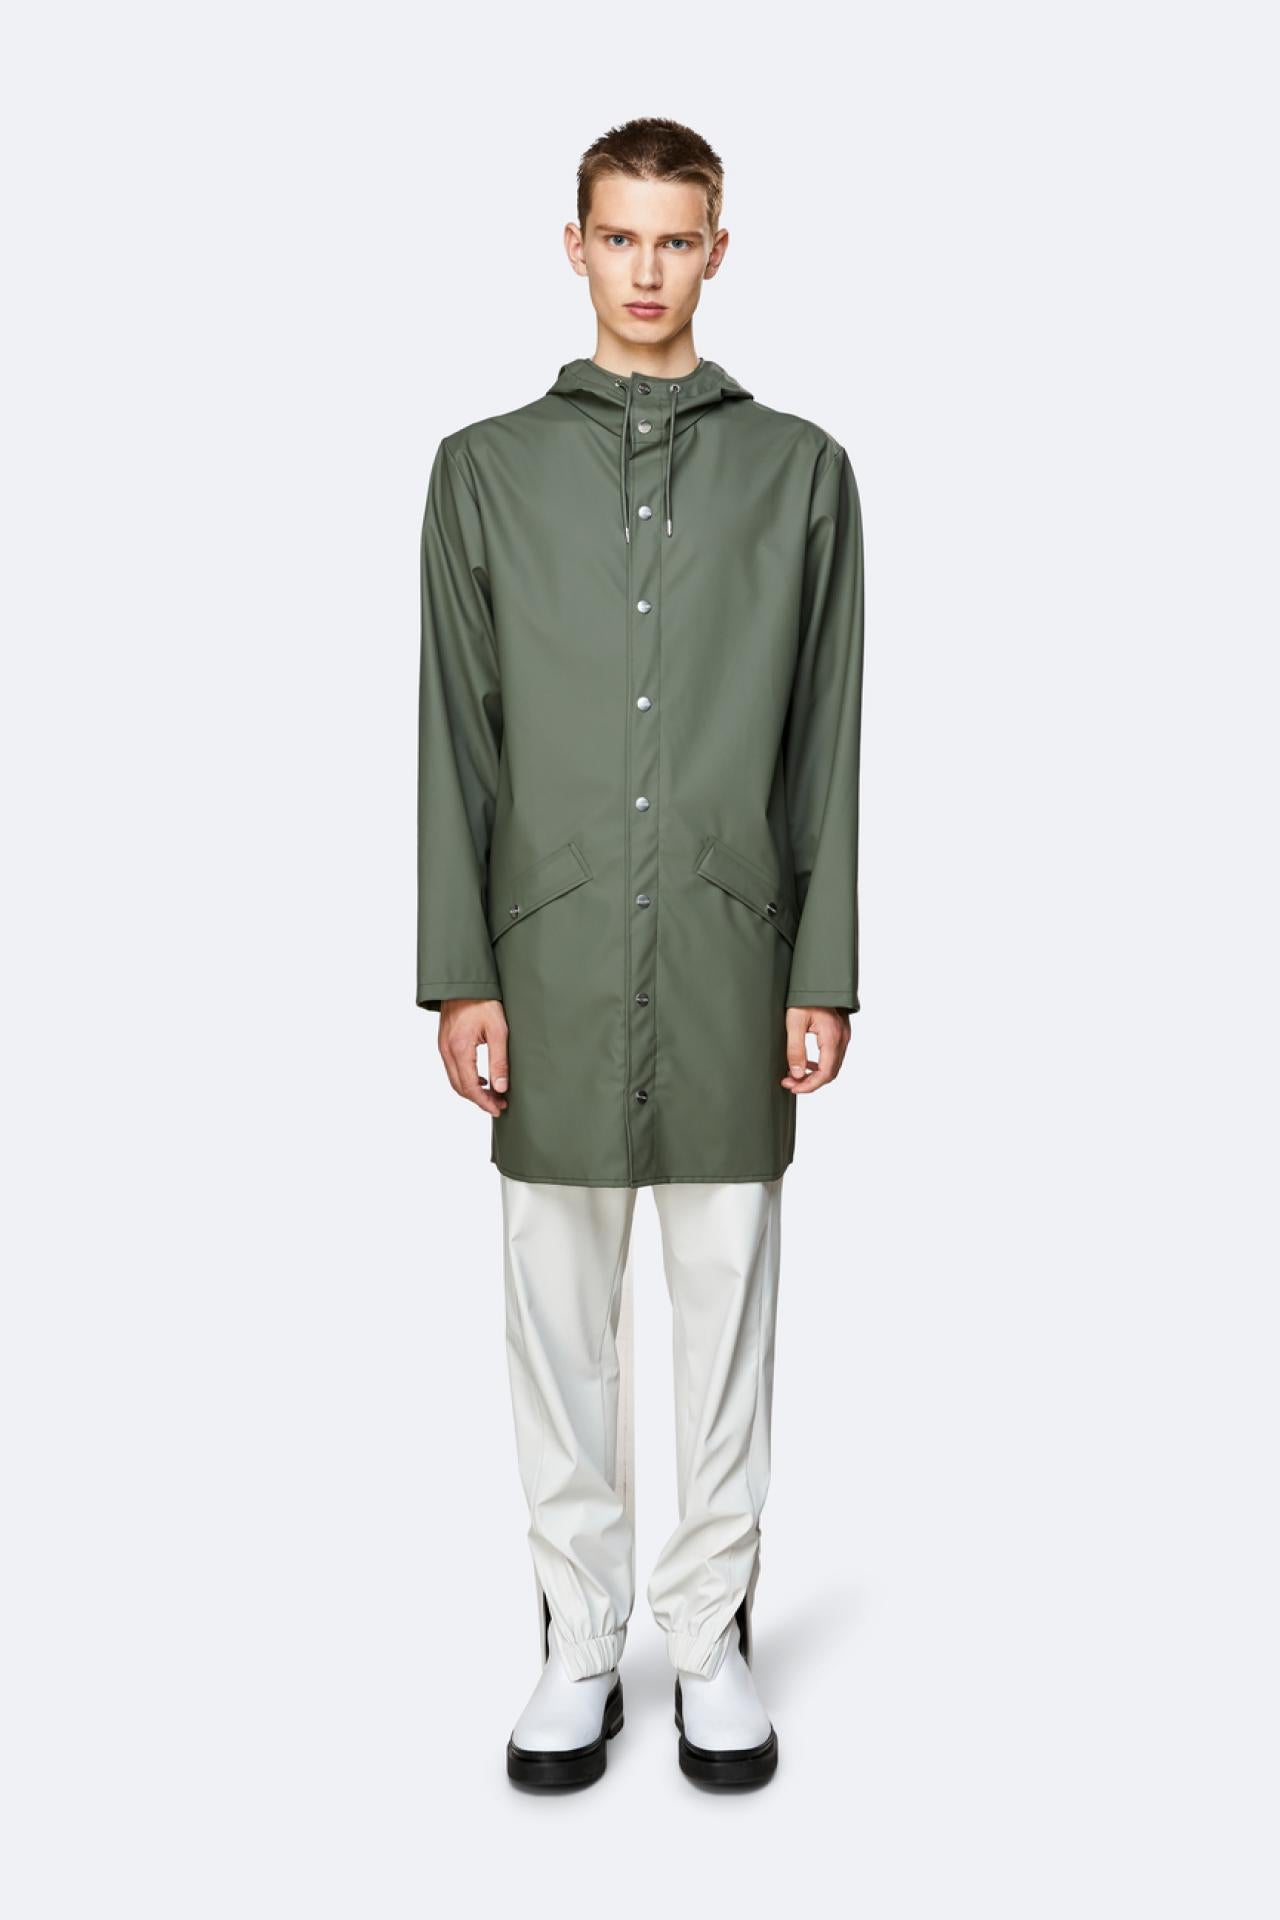 Rains Regenjacke Long Jacket 1202 Olive - Größe: XXS/XS